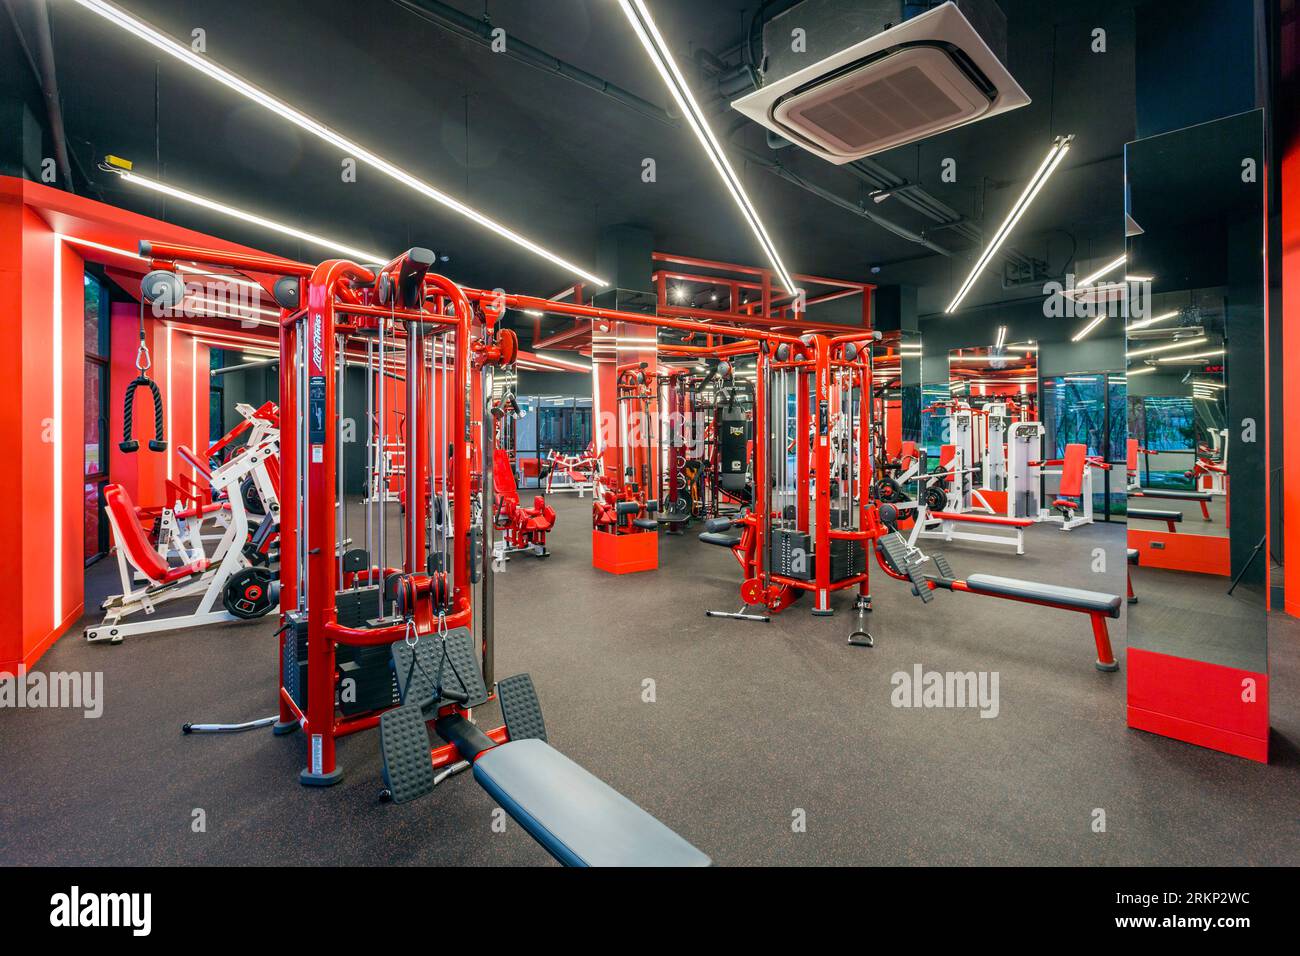 Phuket, Thailandia - 6 febbraio 2018: Interno del centro fitness Alpha Club Phuket con attrezzature per esercizi. Foto Stock